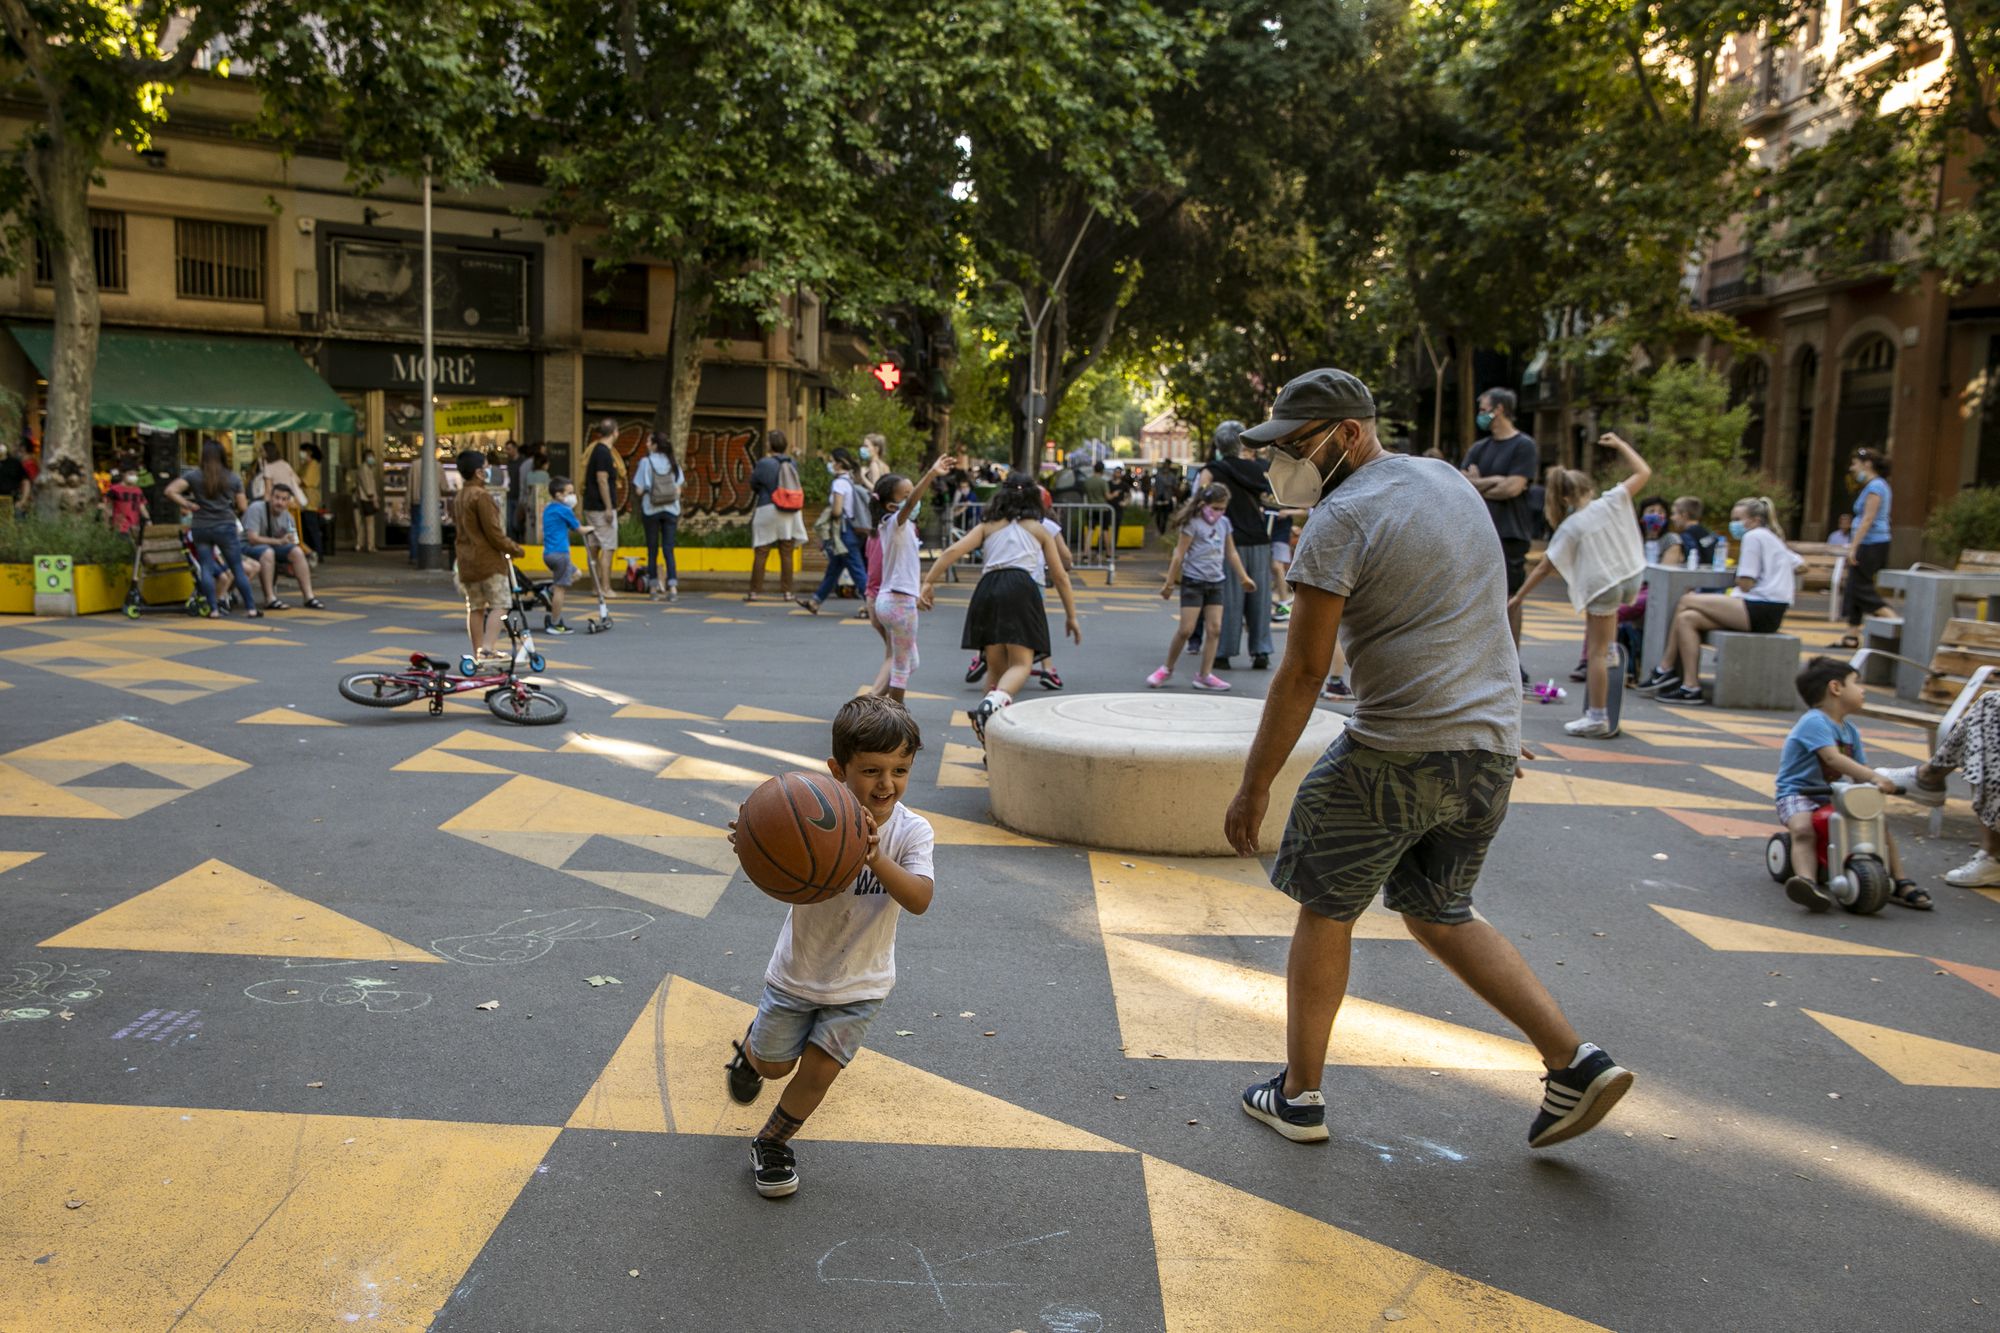 Platz mit schwarz-gelbem Boden mit Dreieck-Muster, spielende Kinder, Erwachsene stehen und sitzen, im Hintergrund Bäume und Gebäude